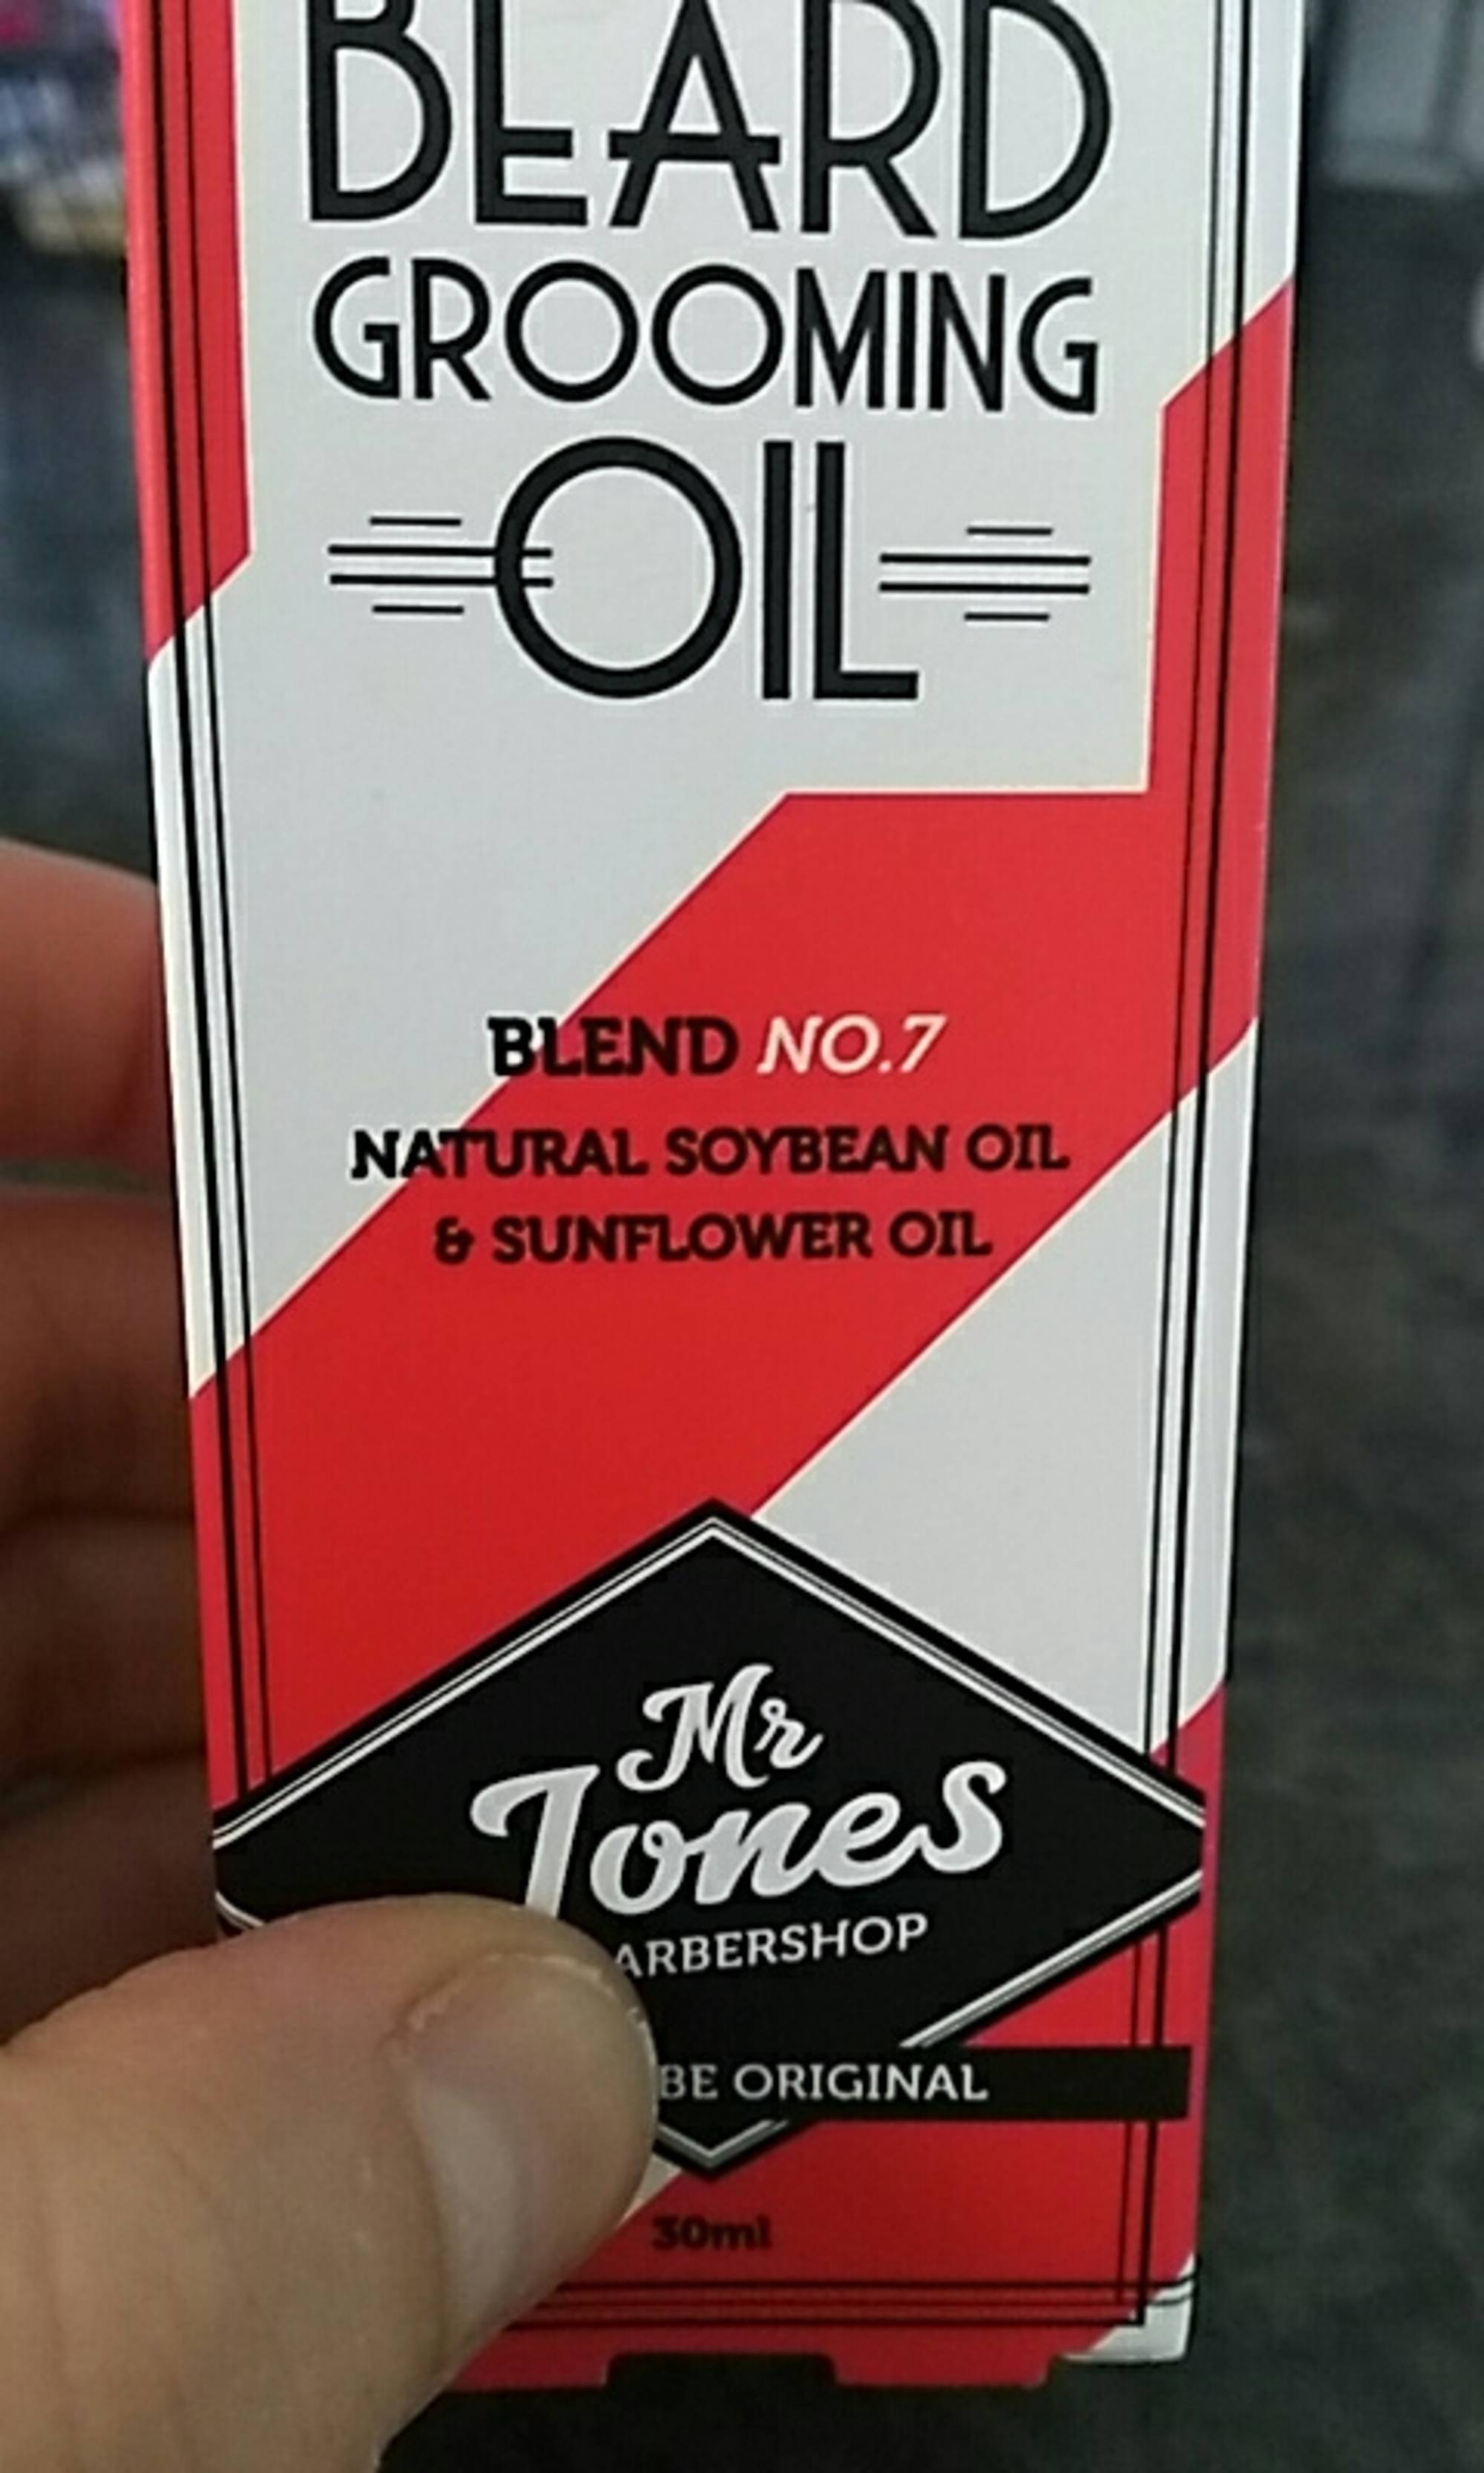 MR JONES - Beard grooming oil